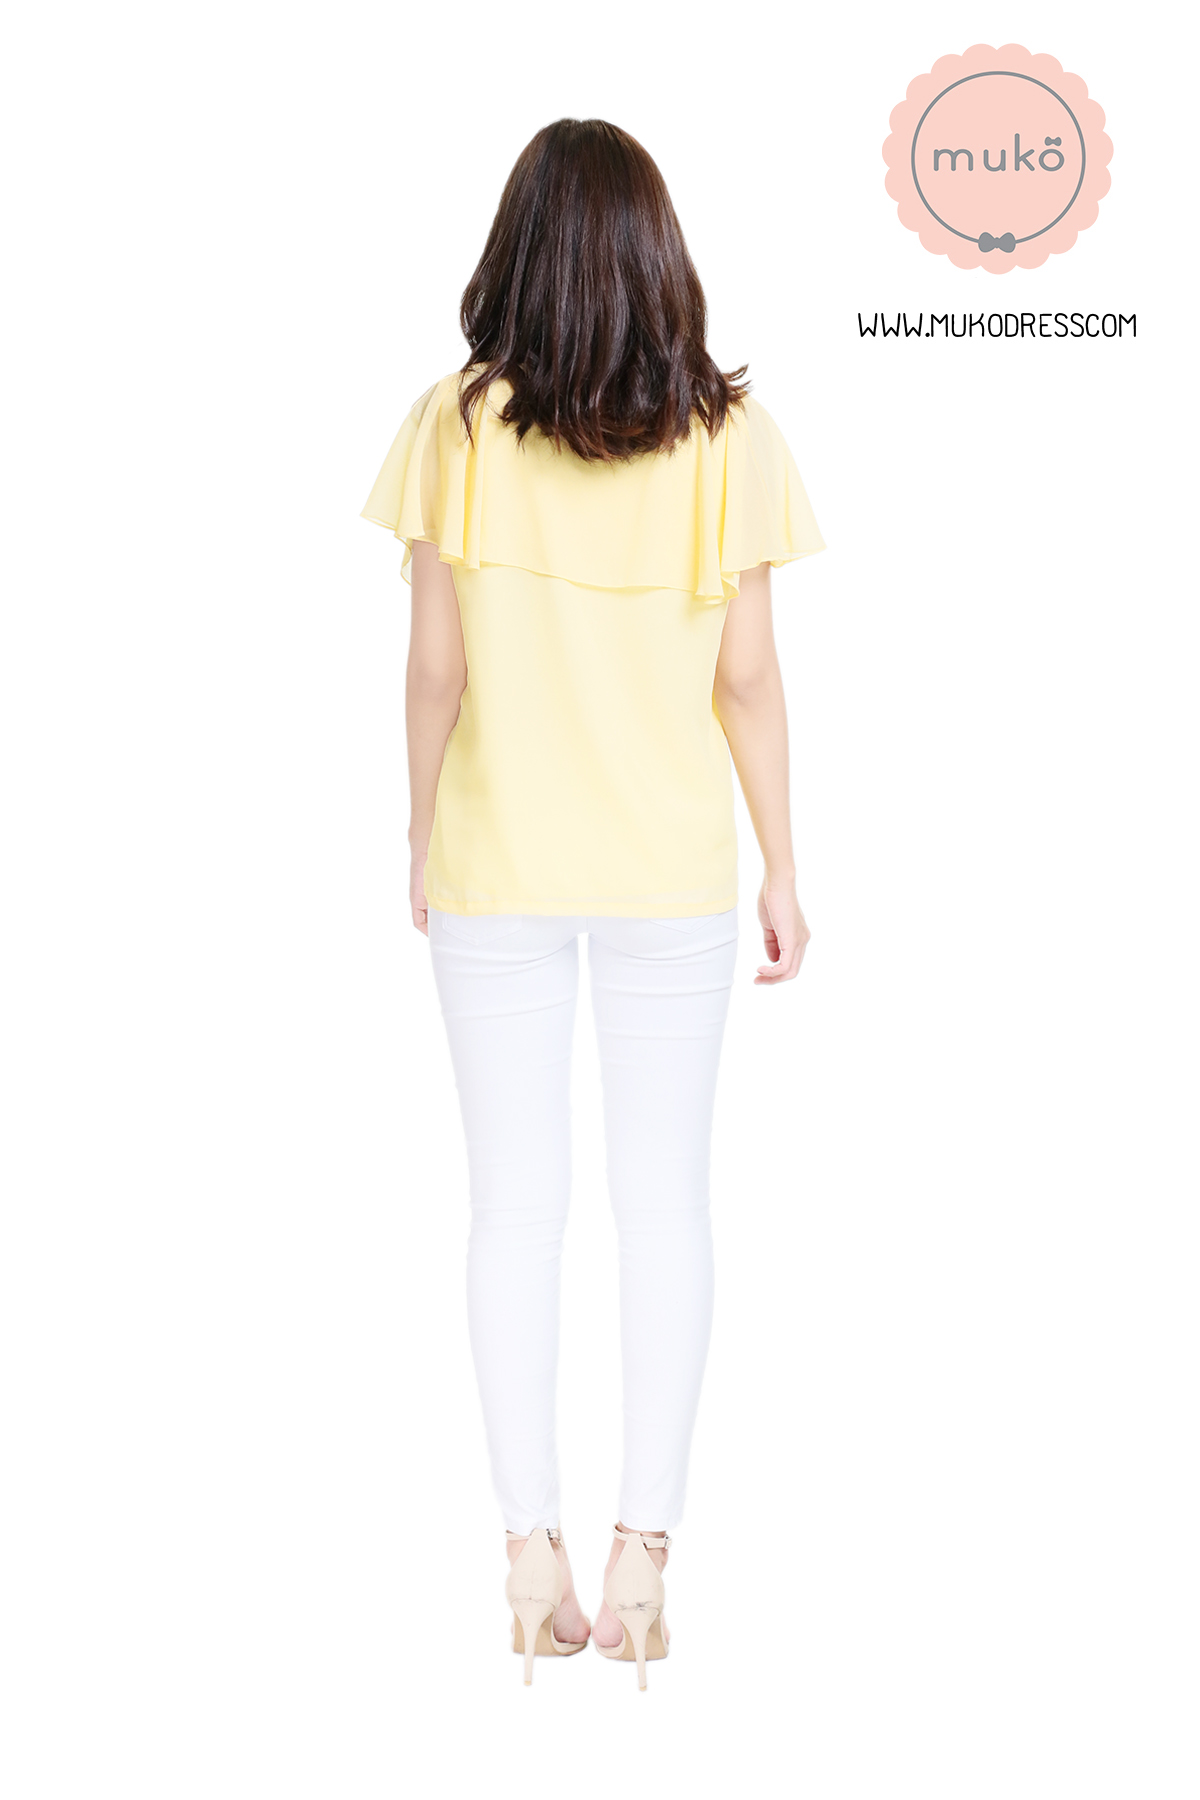 Muko Emma  เสื้อให้นม คลุมท้อง BSL03-023 สีเหลืองนม